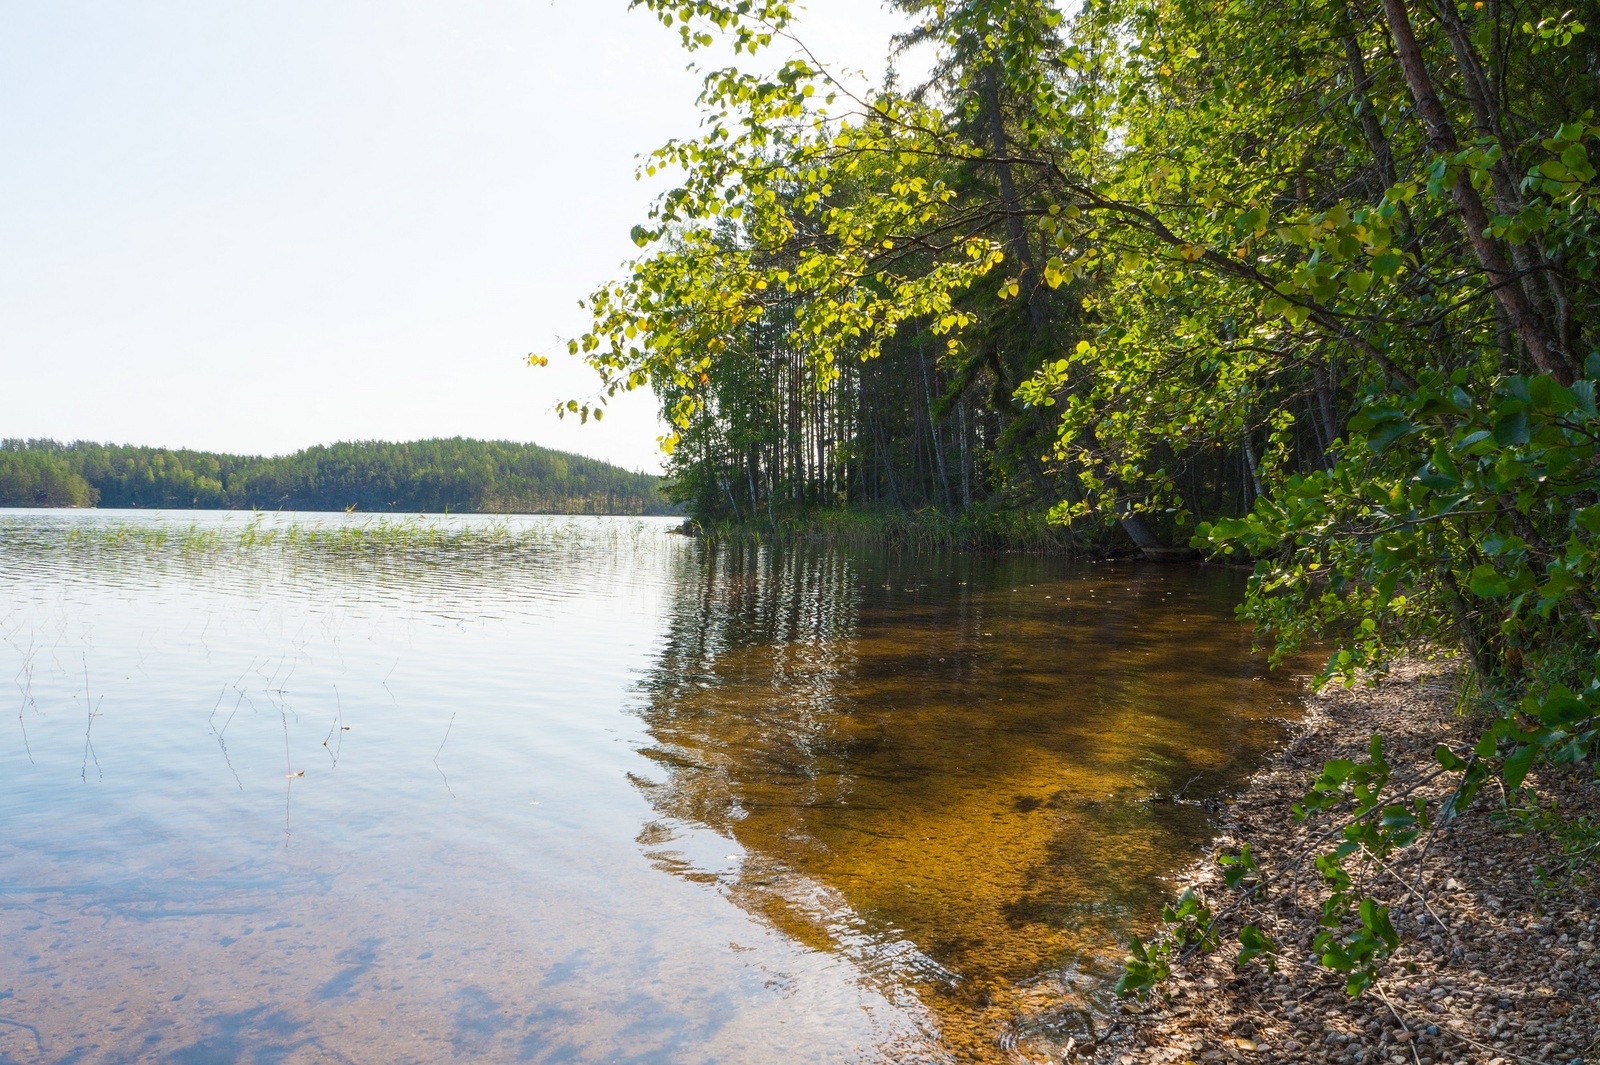 Kesäinen metsä reunustaa järveä, jonka hiekkapohja erottuu kirkkaan veden läpi.